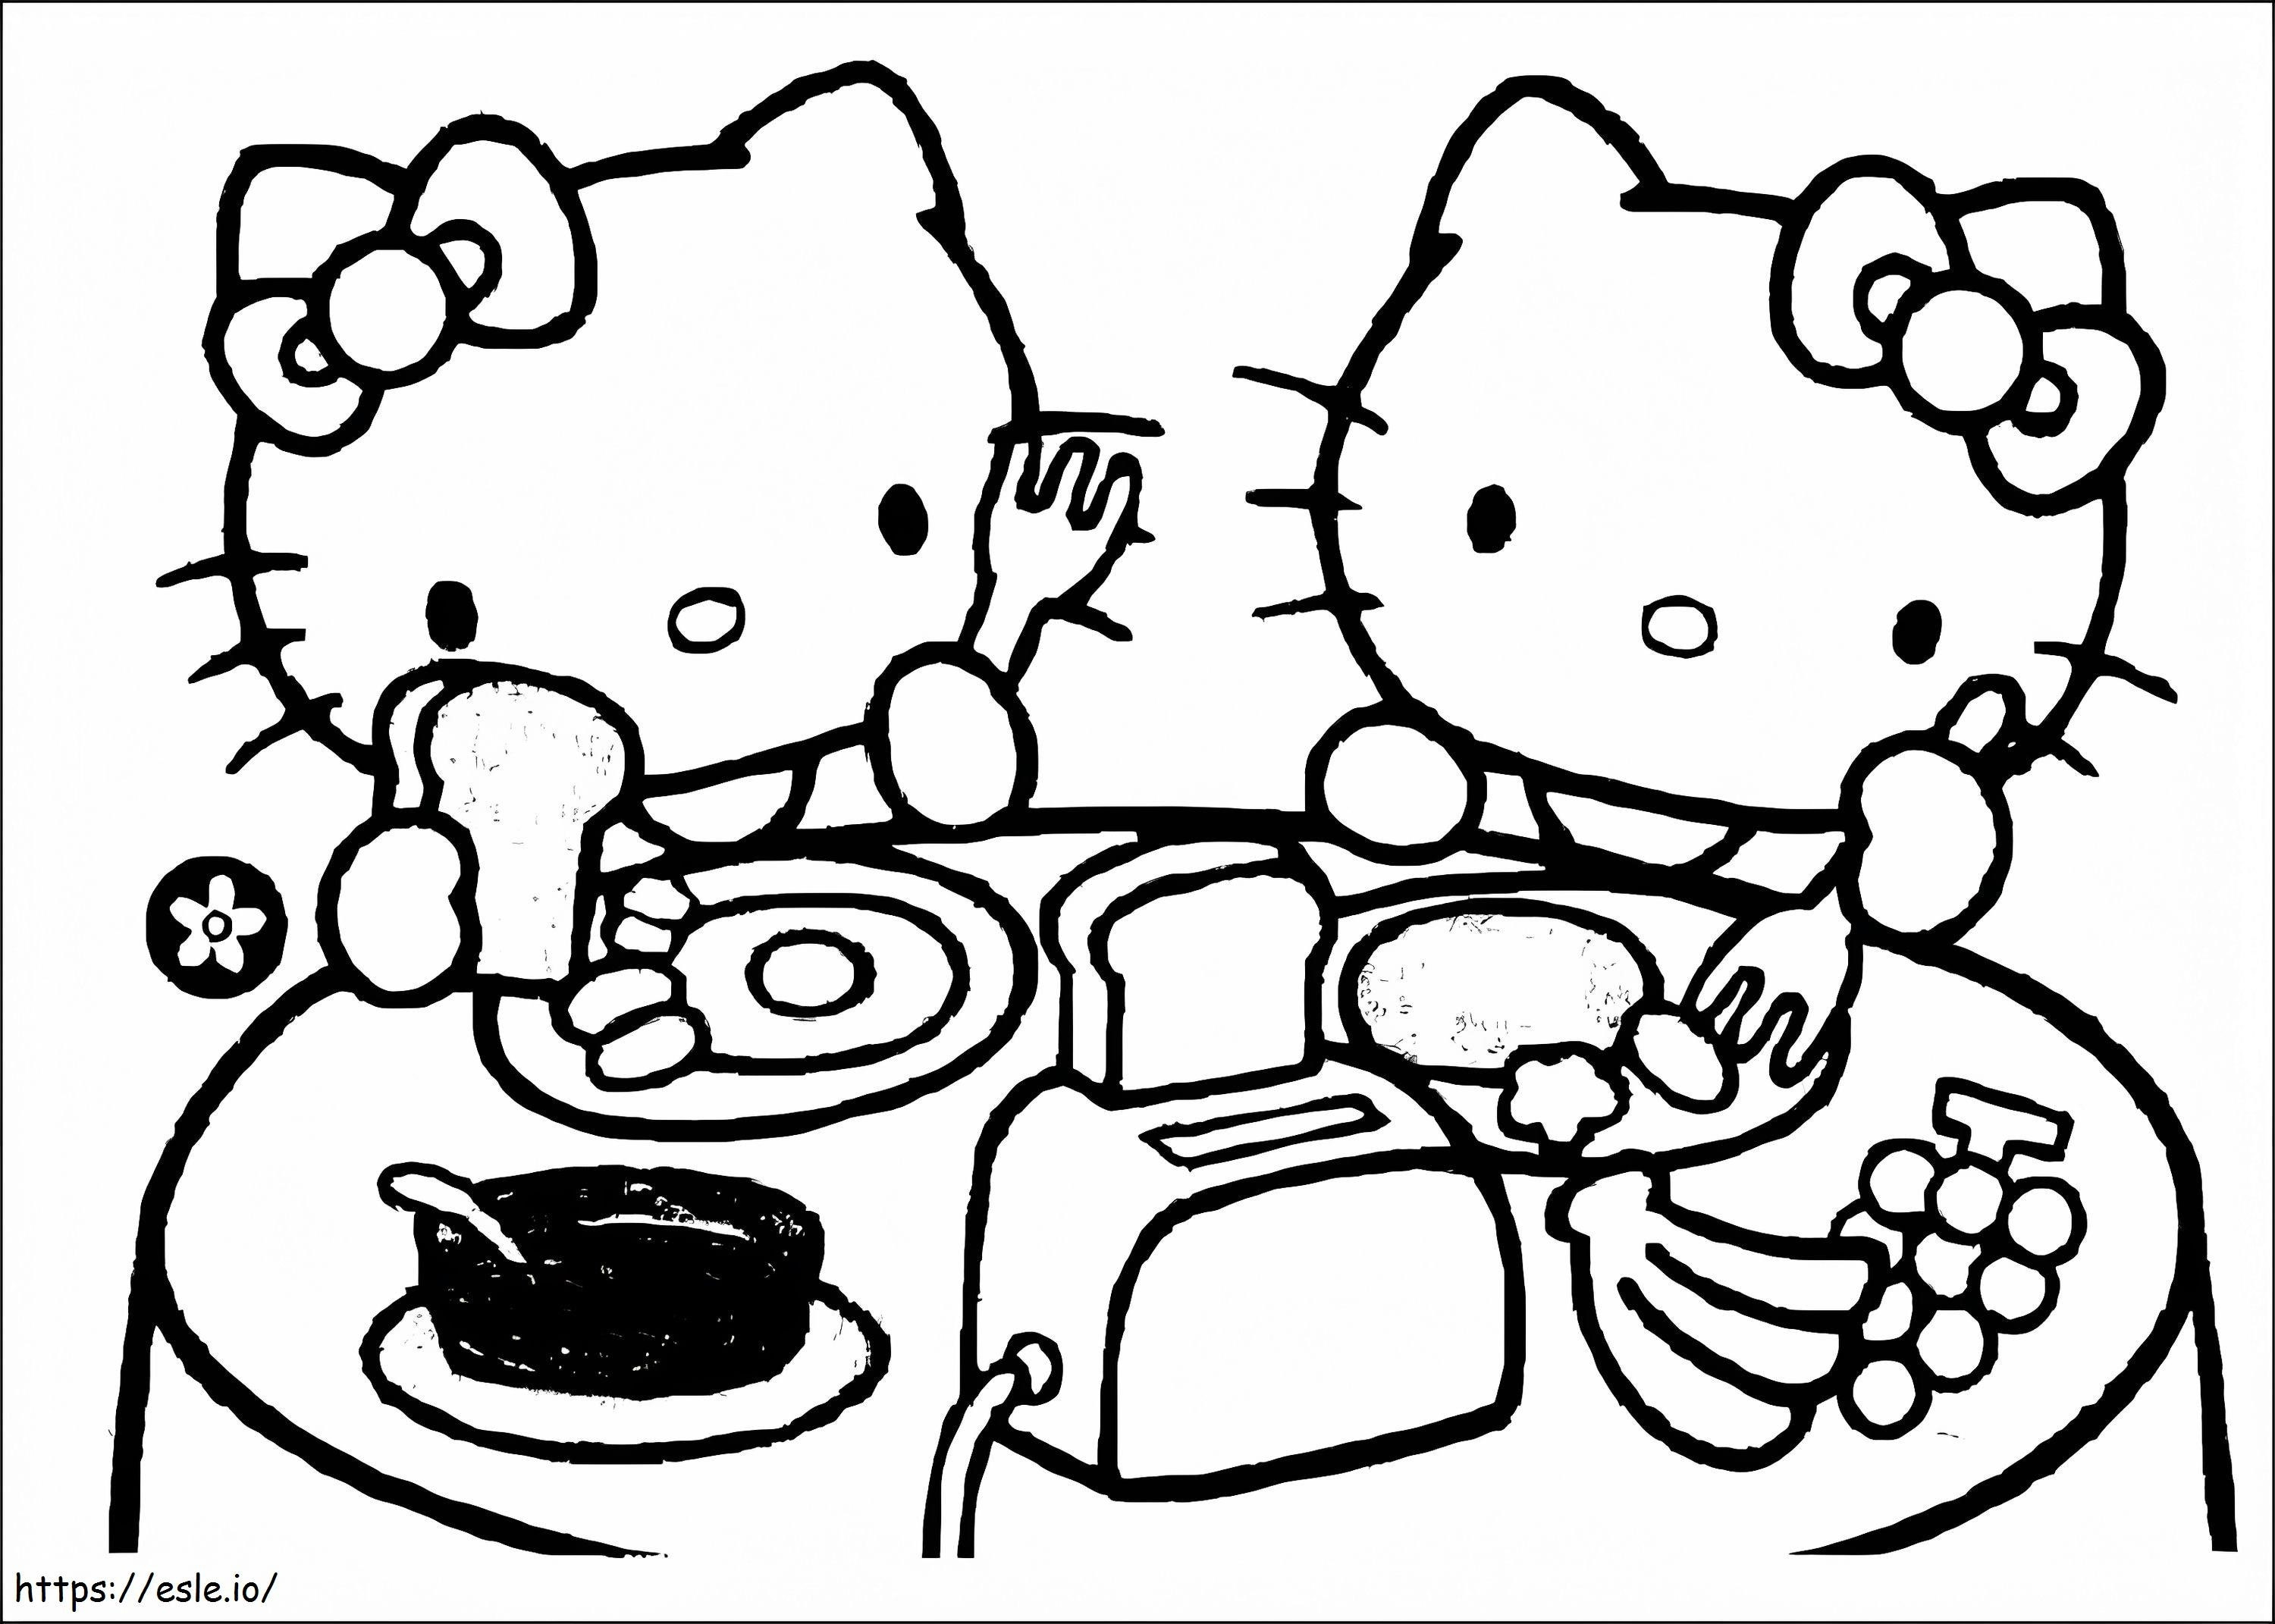 Hello Kitty jedząc śniadanie kolorowanka